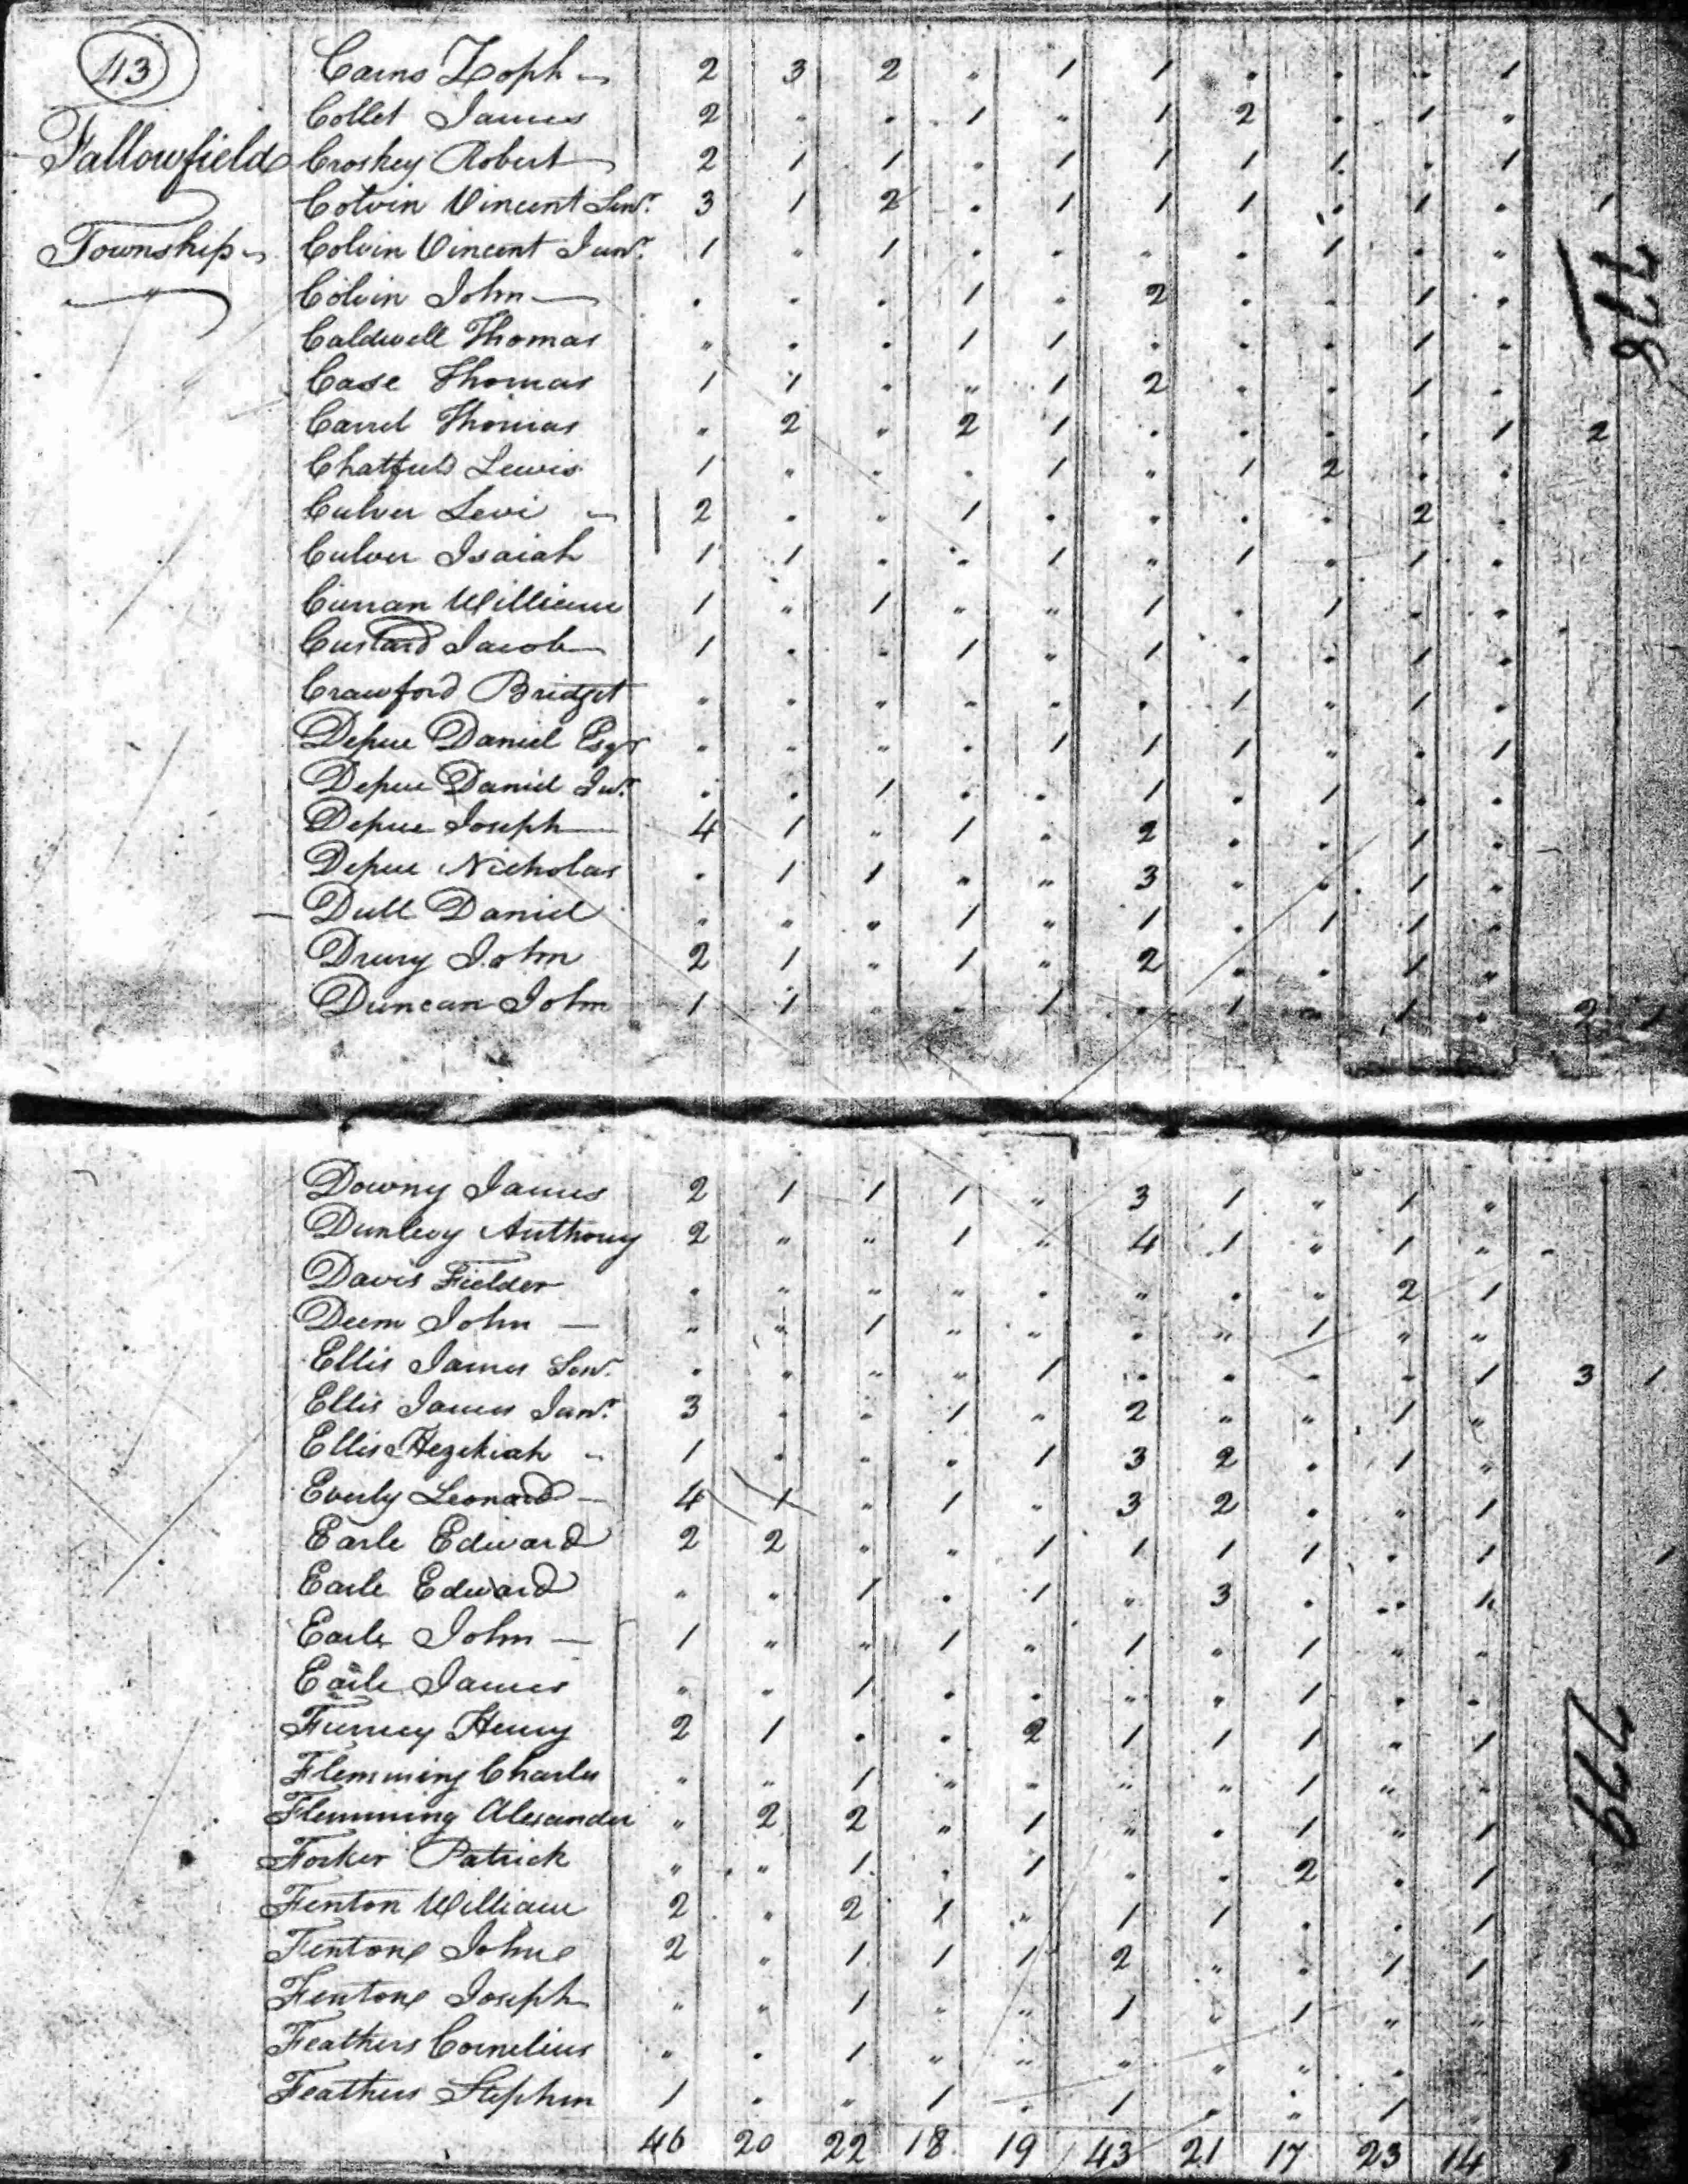 Black Pete in 1800 US Census